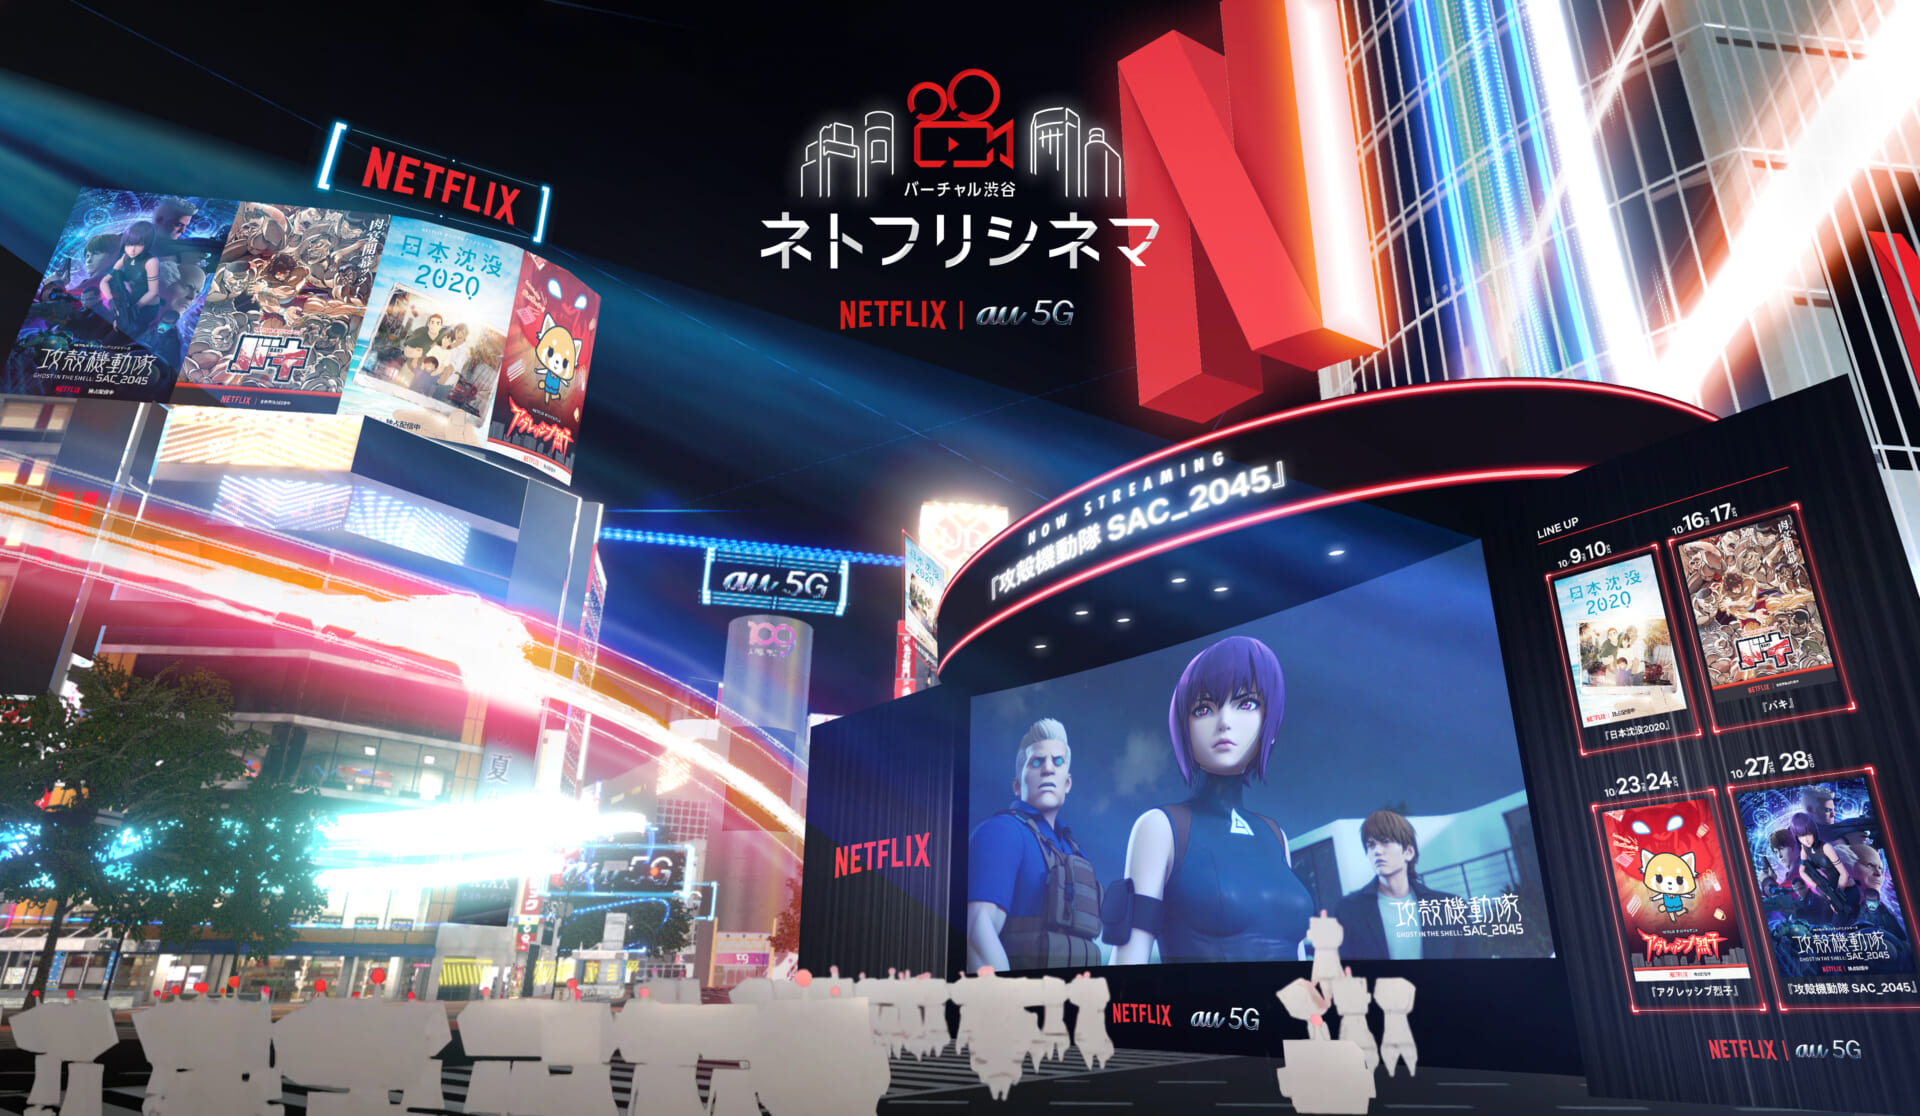 バーチャル空間の渋谷でNetflixアニメ上映会「ネトフリシネマ in バーチャル渋谷」開催